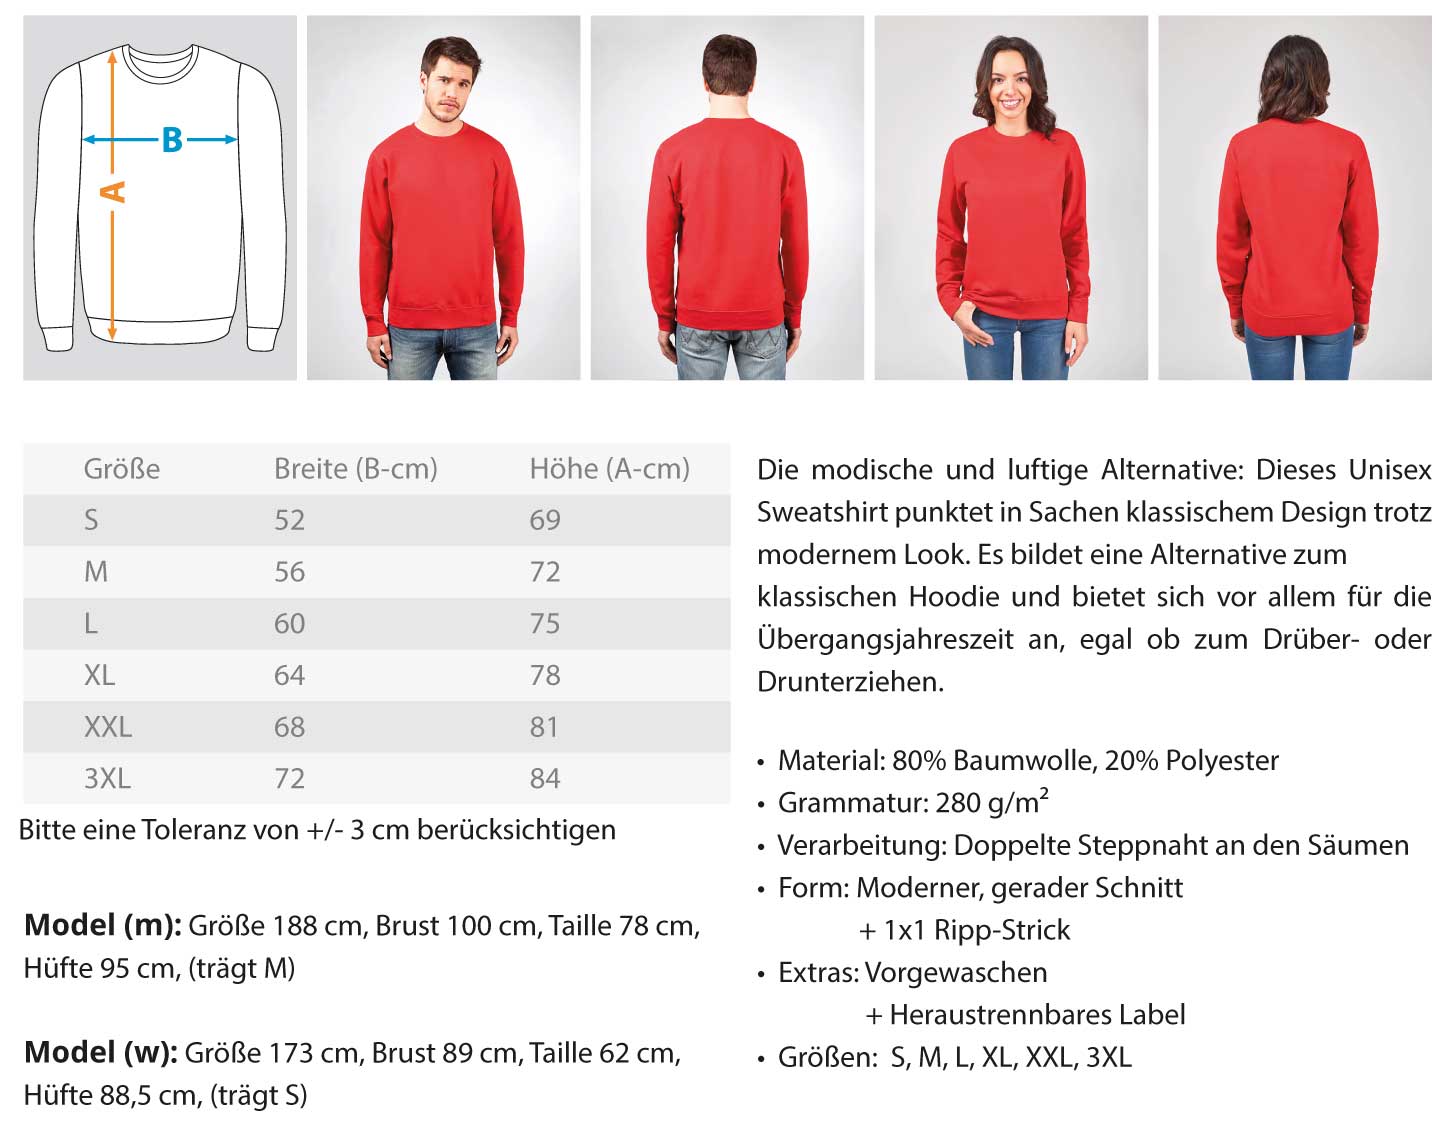 Handwerk mit Tradition Gerüstbauer  - Unisex Pullover €34.95 Gerüstbauer - Shop >>